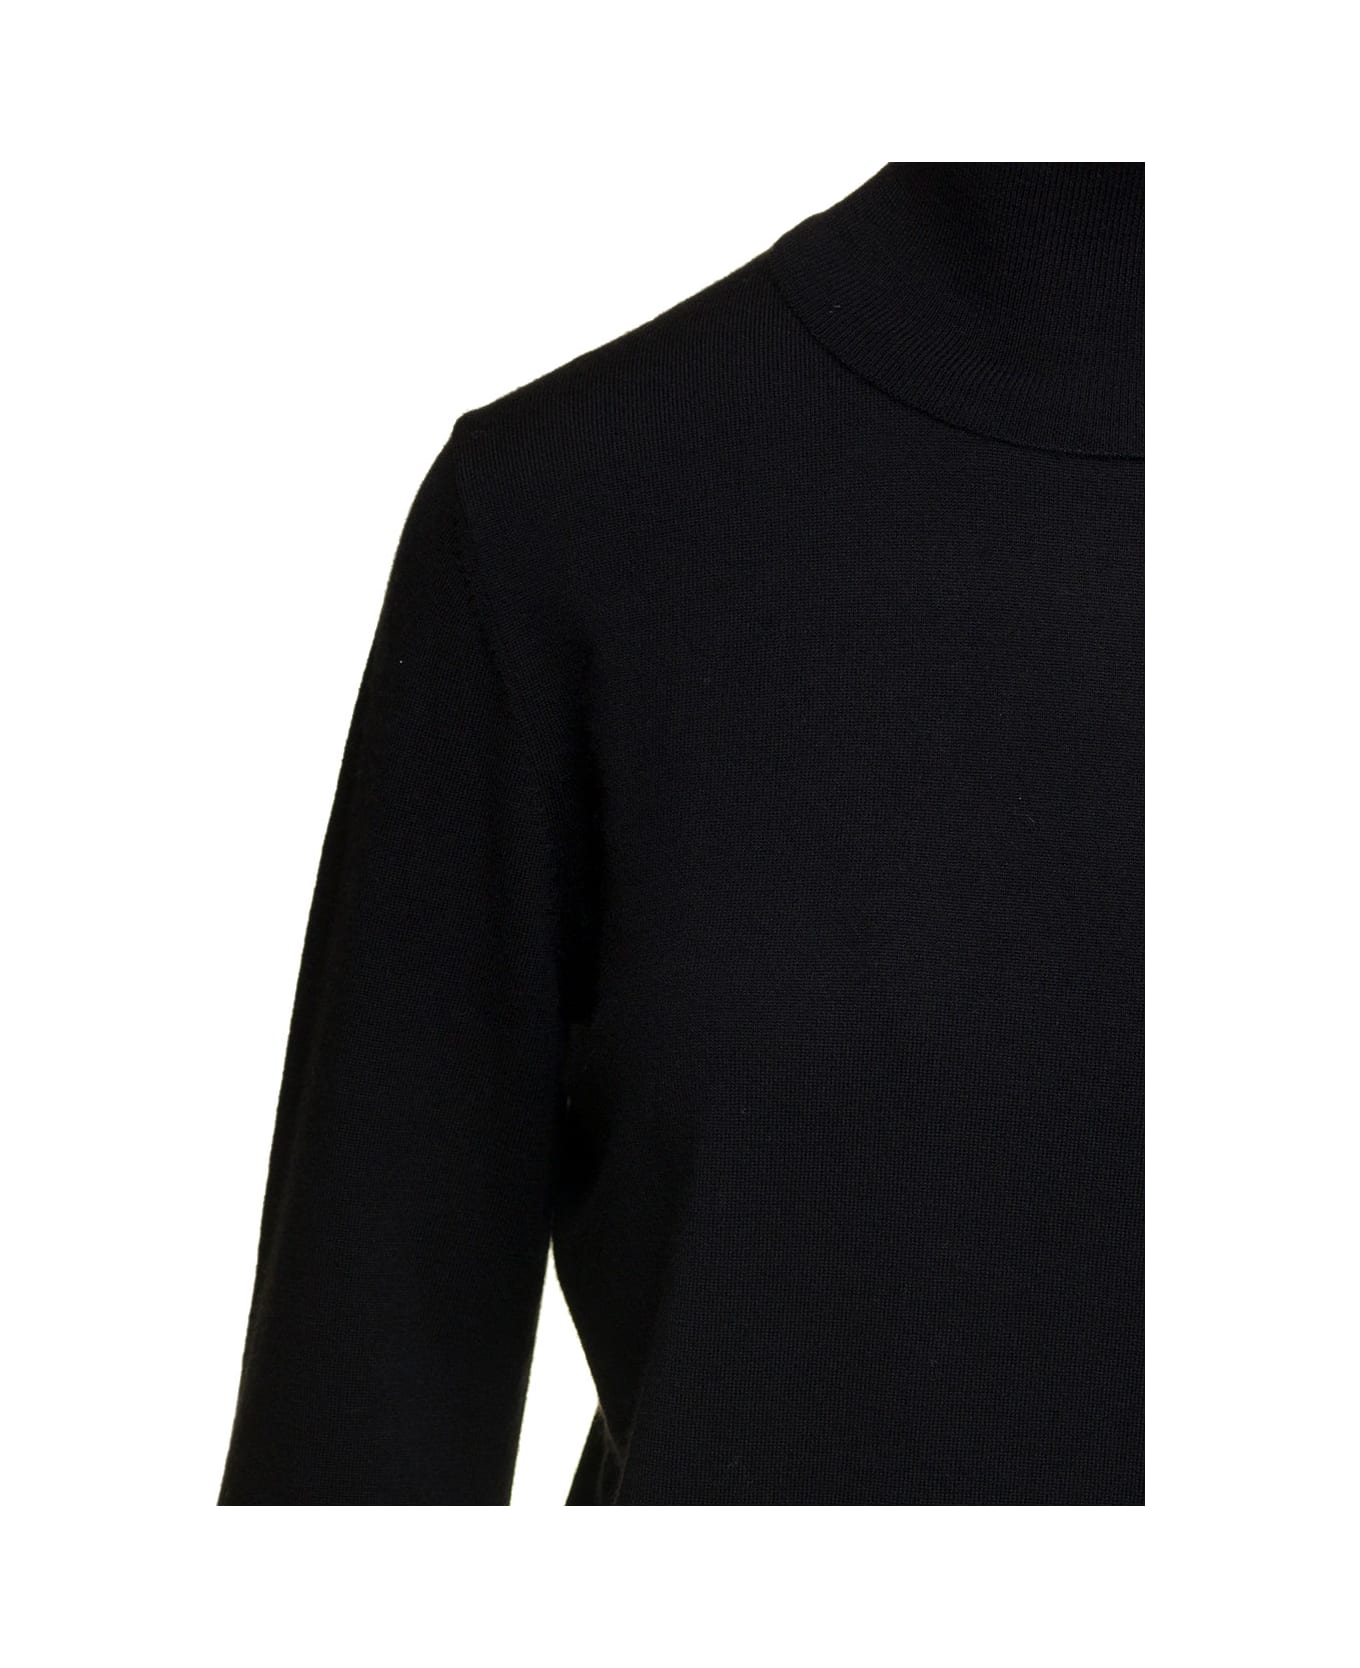 Parosh Black Mock Neck Sweatshirt With Long Sleeves In Wool Blend Woman - Nero